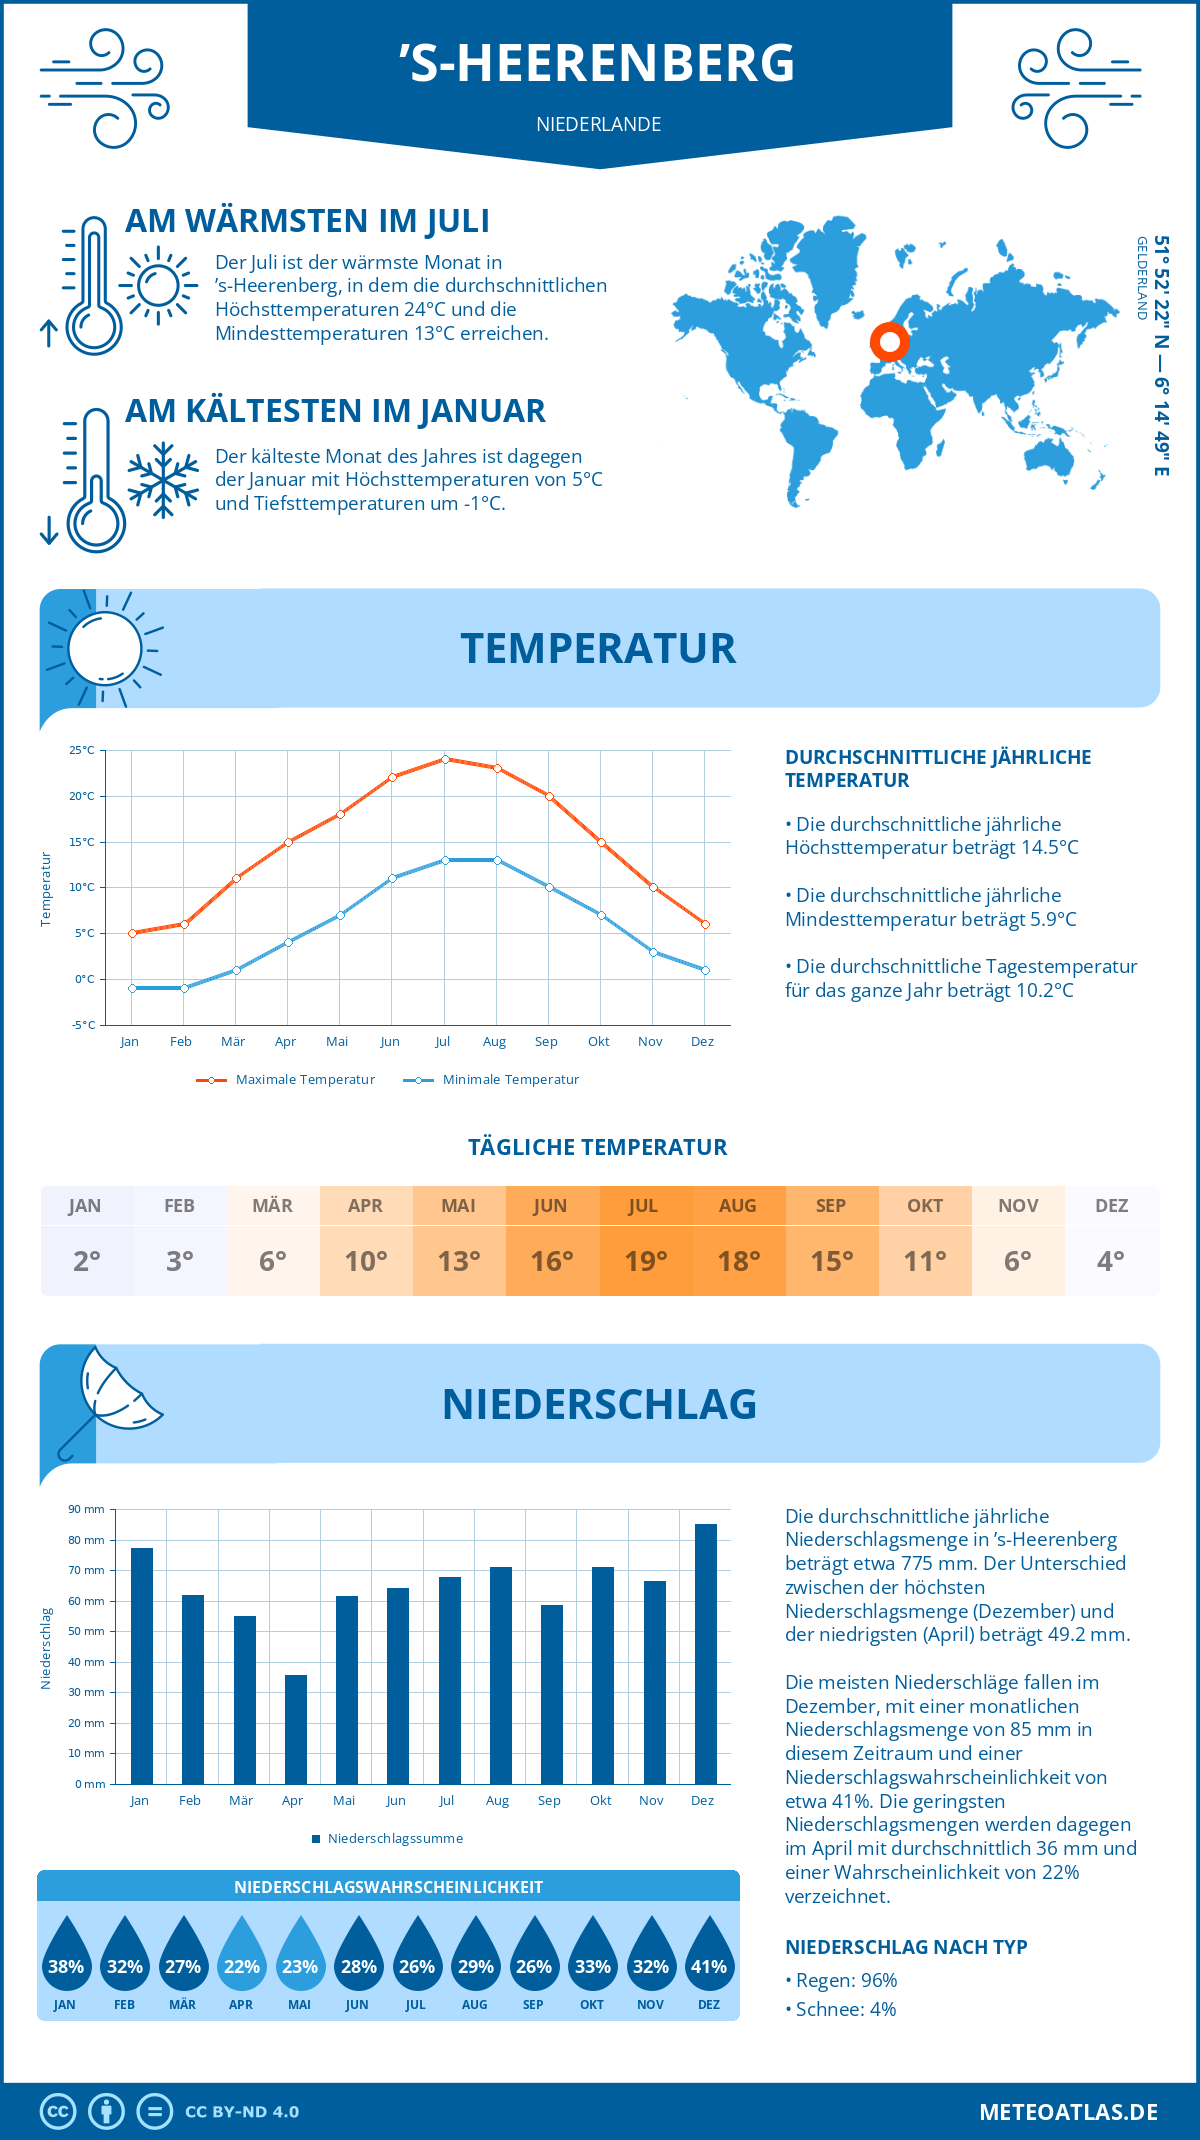 Wetter ’s-Heerenberg (Niederlande) - Temperatur und Niederschlag